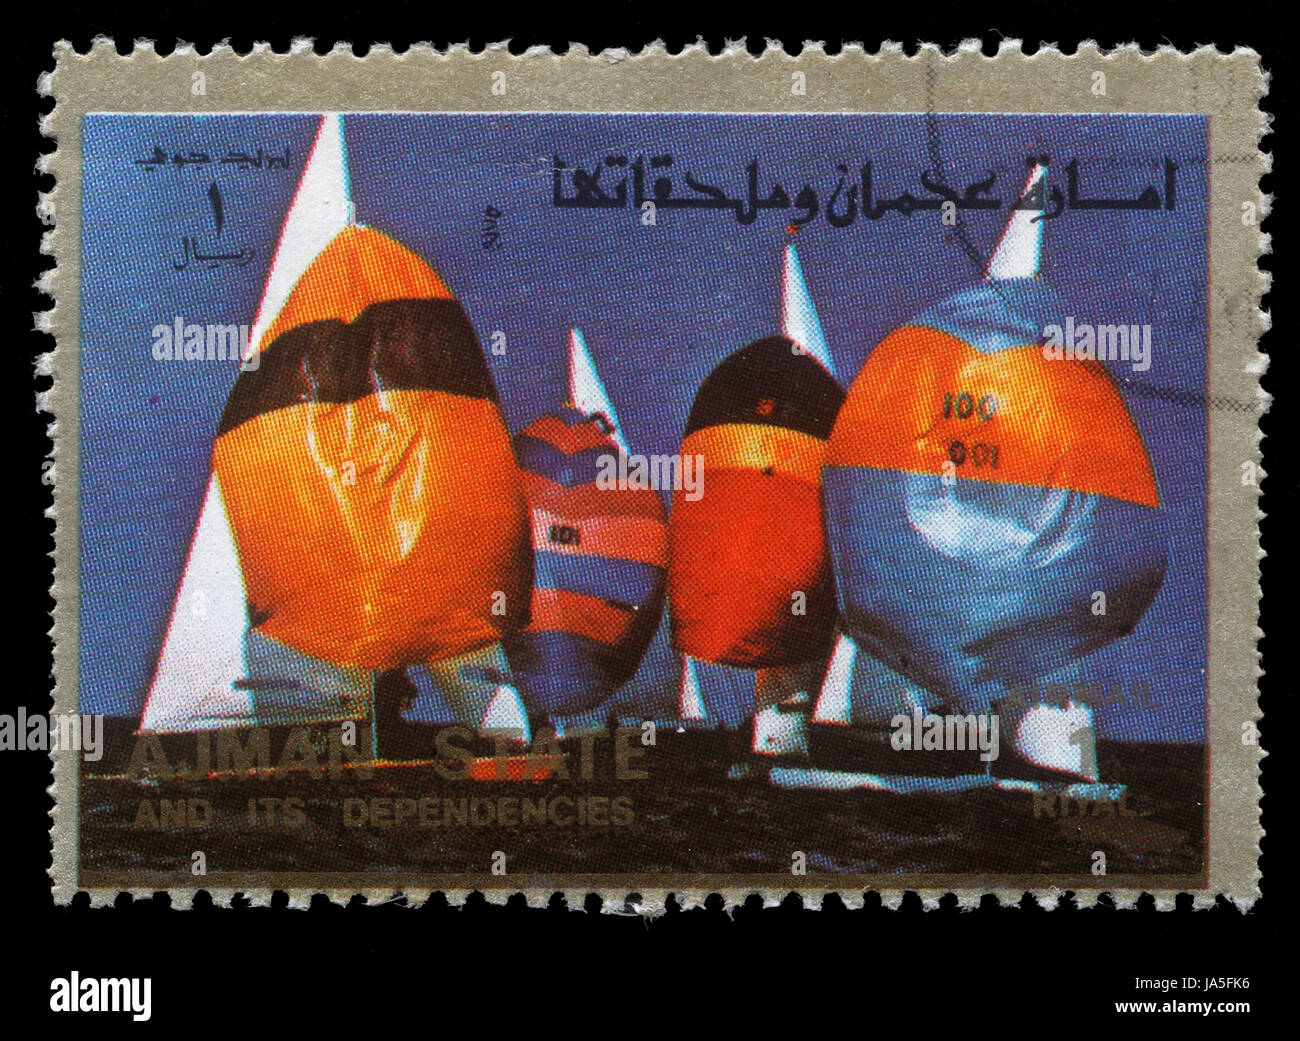 AJMAN - VERS 1973 : timbre imprimé dans l'Ohio montre la voile, Jeux Olympiques d'été, vers 1973 Banque D'Images